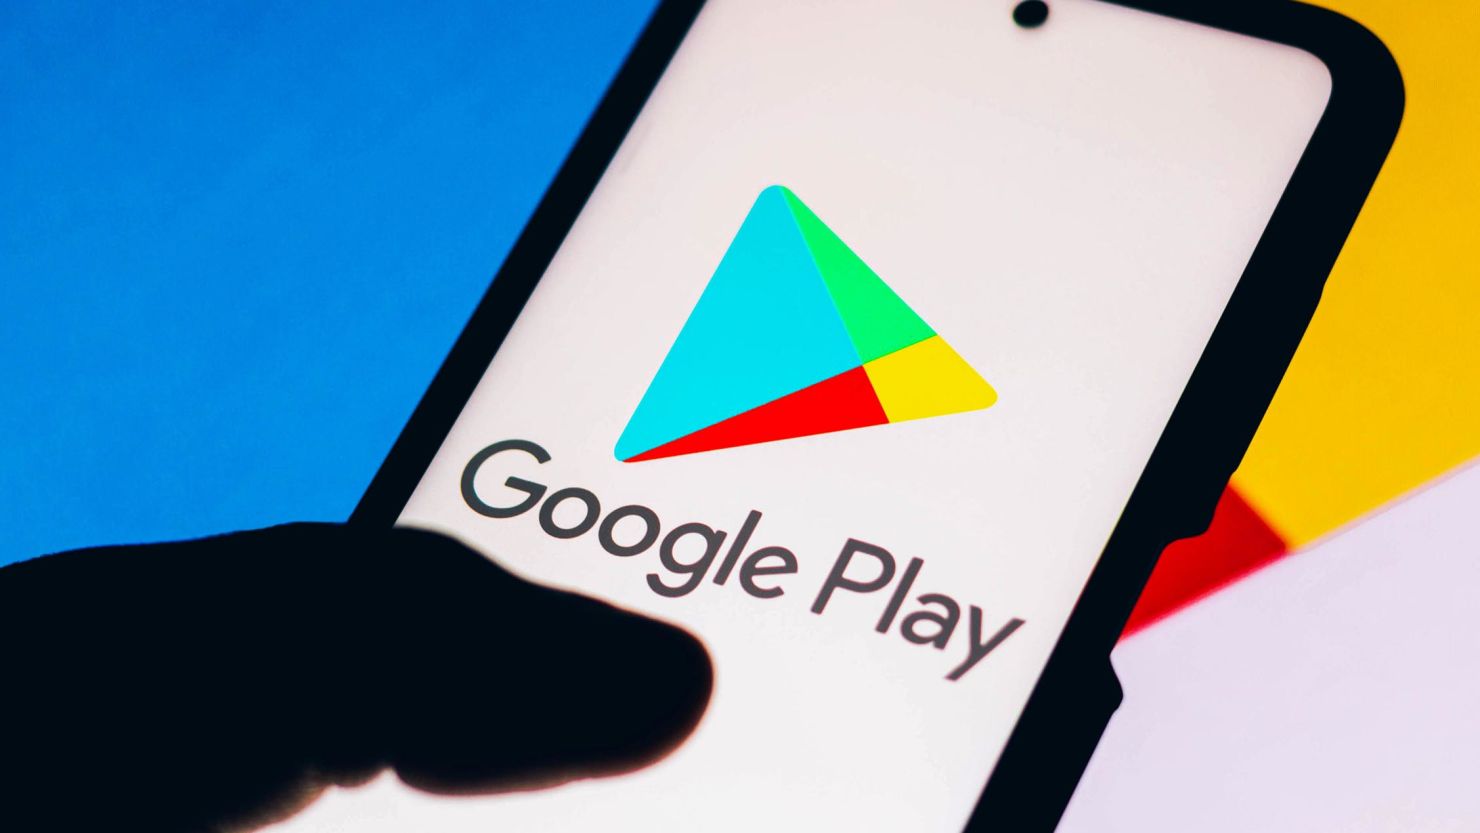 Google Play introduce una nuova funzione per identificare le app governative ufficiali